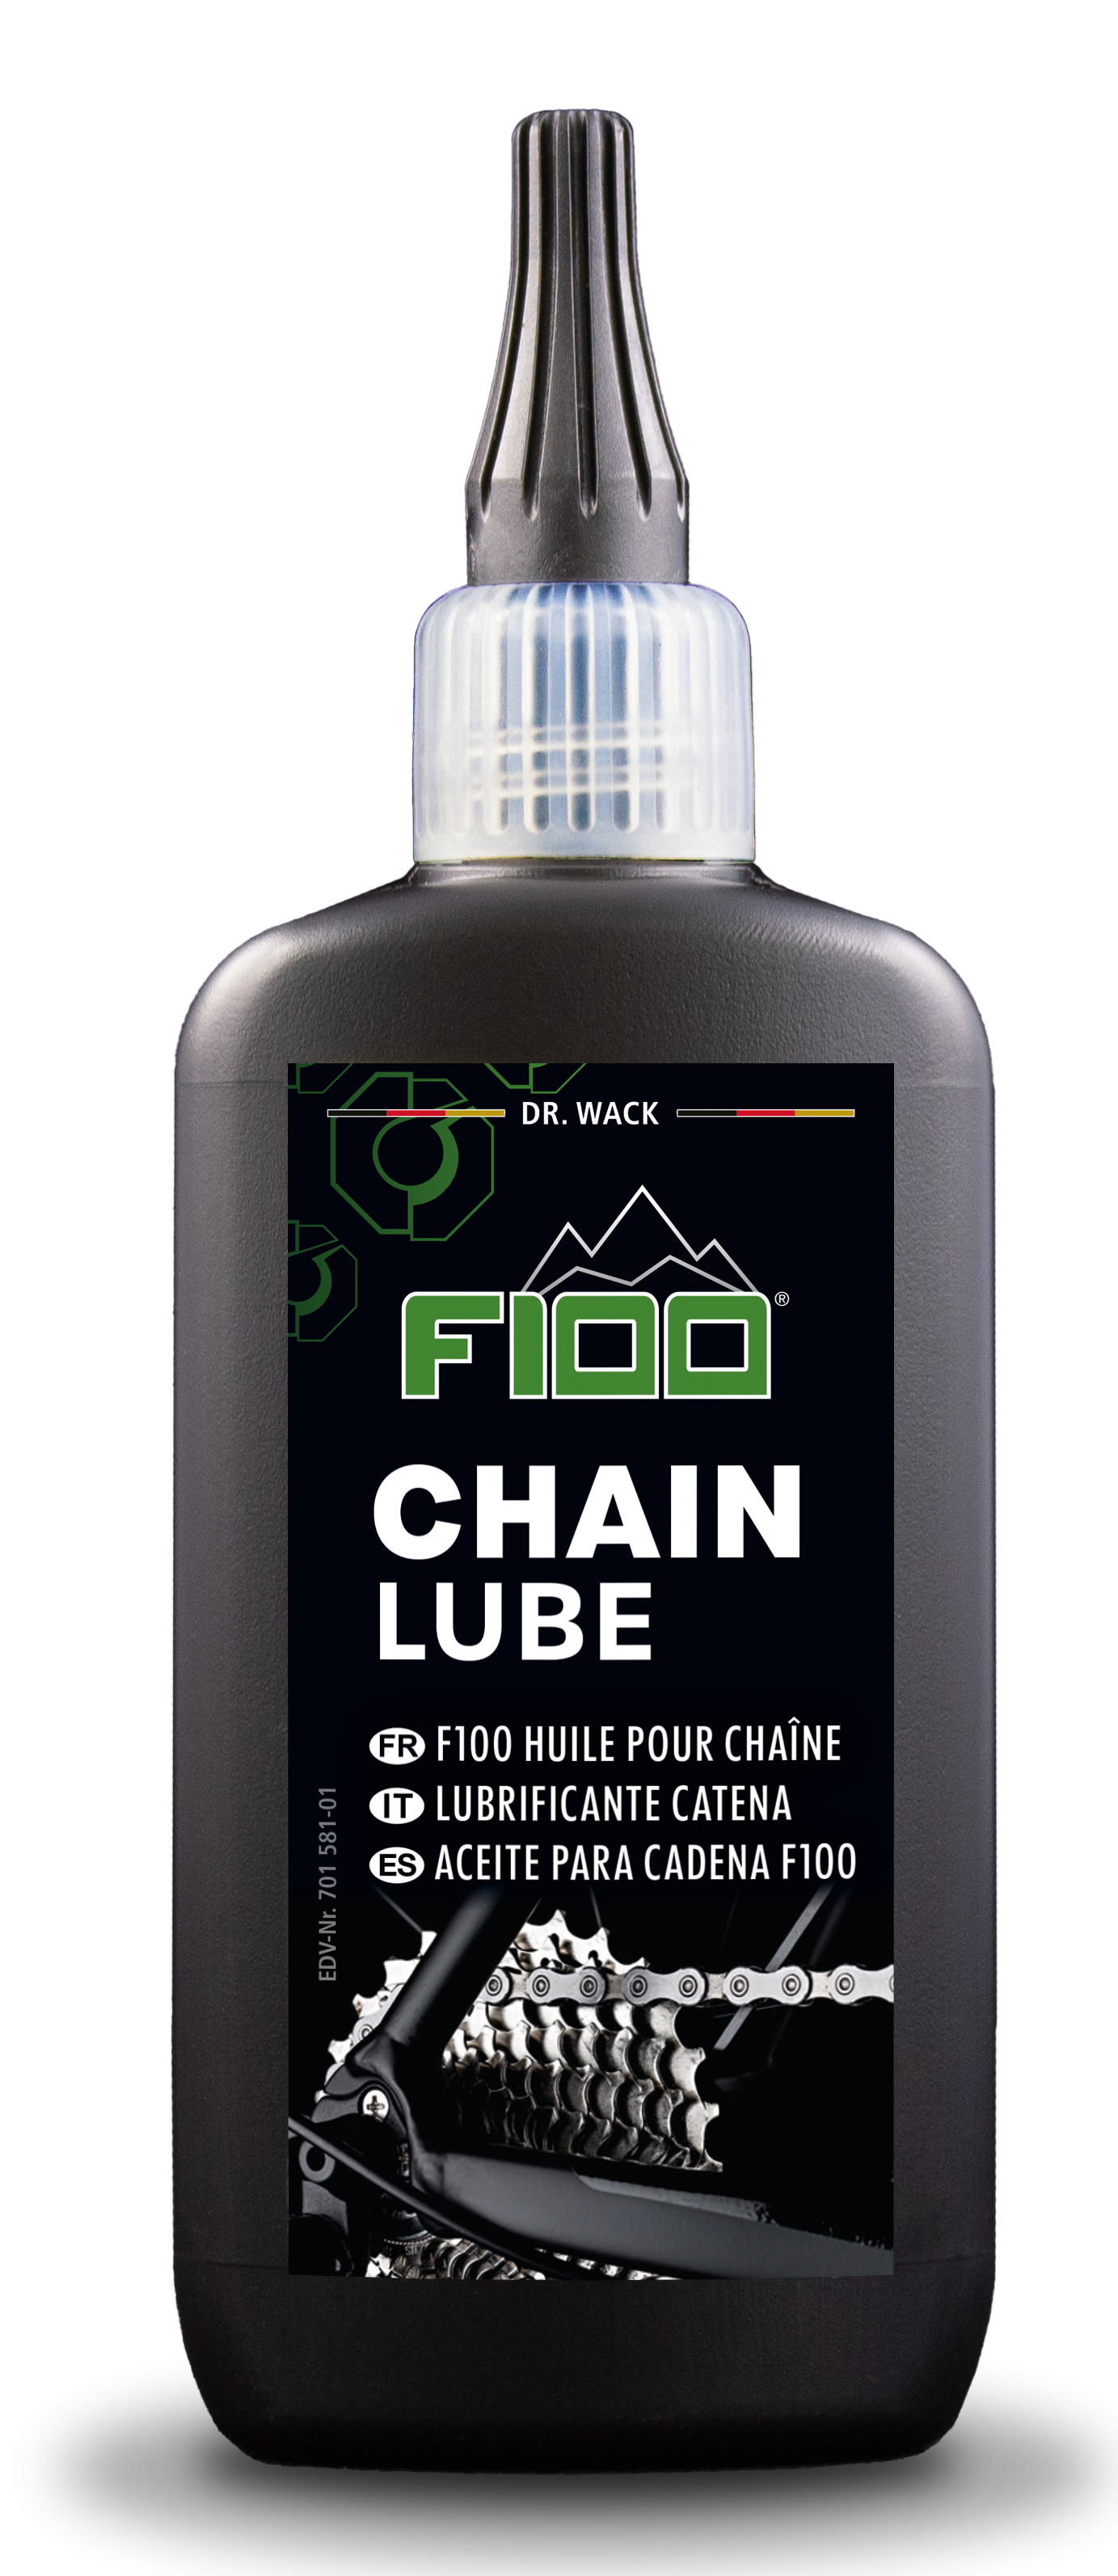 Drwack Chain lubrificant Dr.Wack F100 Catena Lube Dropper Bottle di 100 ml